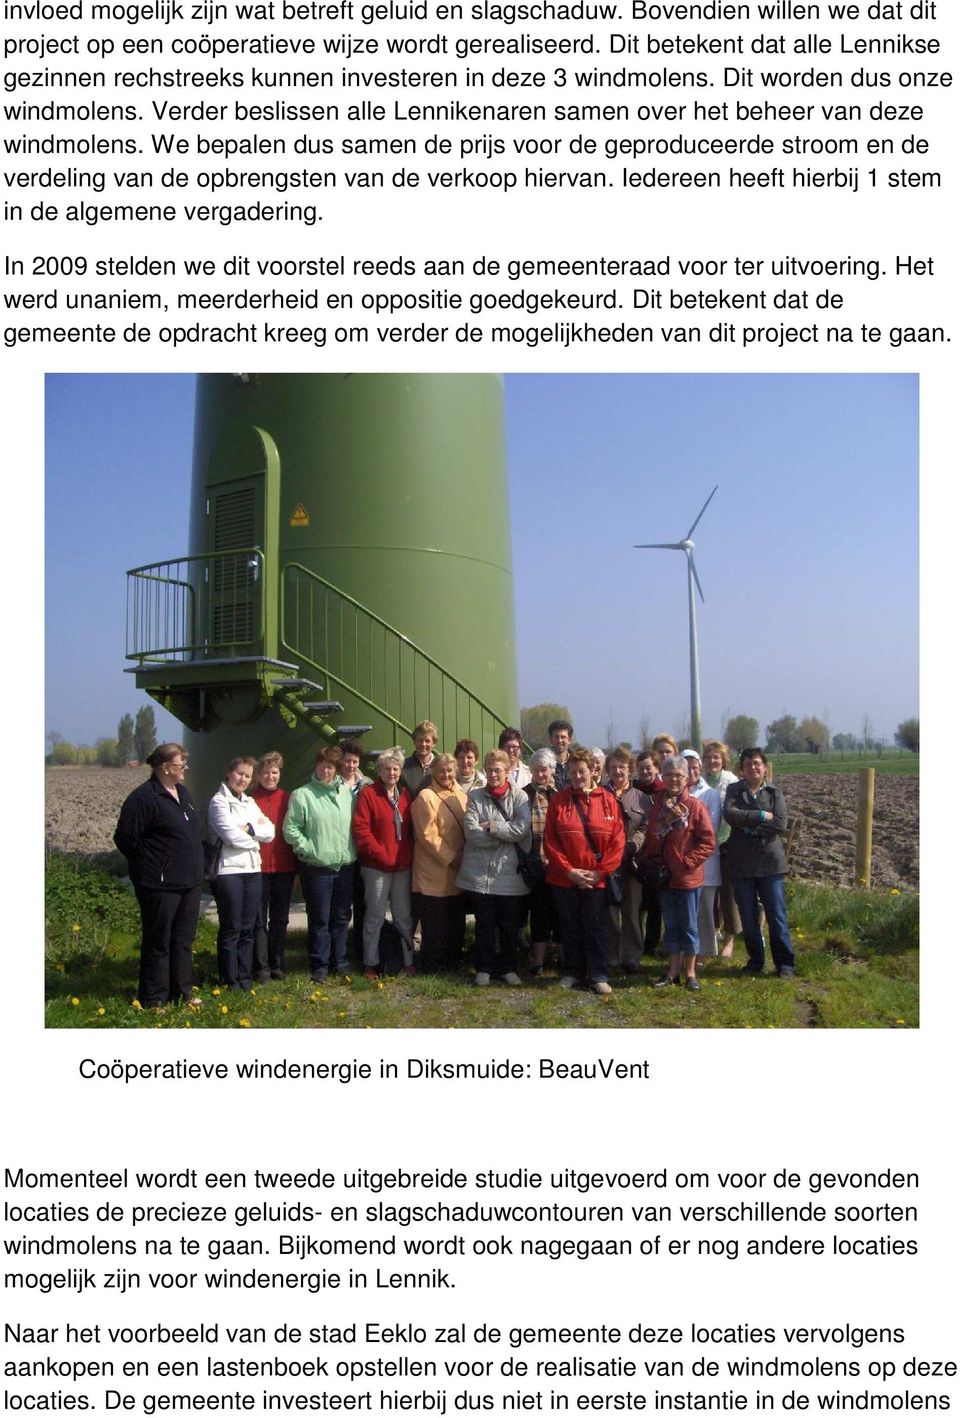 Verder beslissen alle Lennikenaren samen over het beheer van deze windmolens. We bepalen dus samen de prijs voor de geproduceerde stroom en de verdeling van de opbrengsten van de verkoop hiervan.